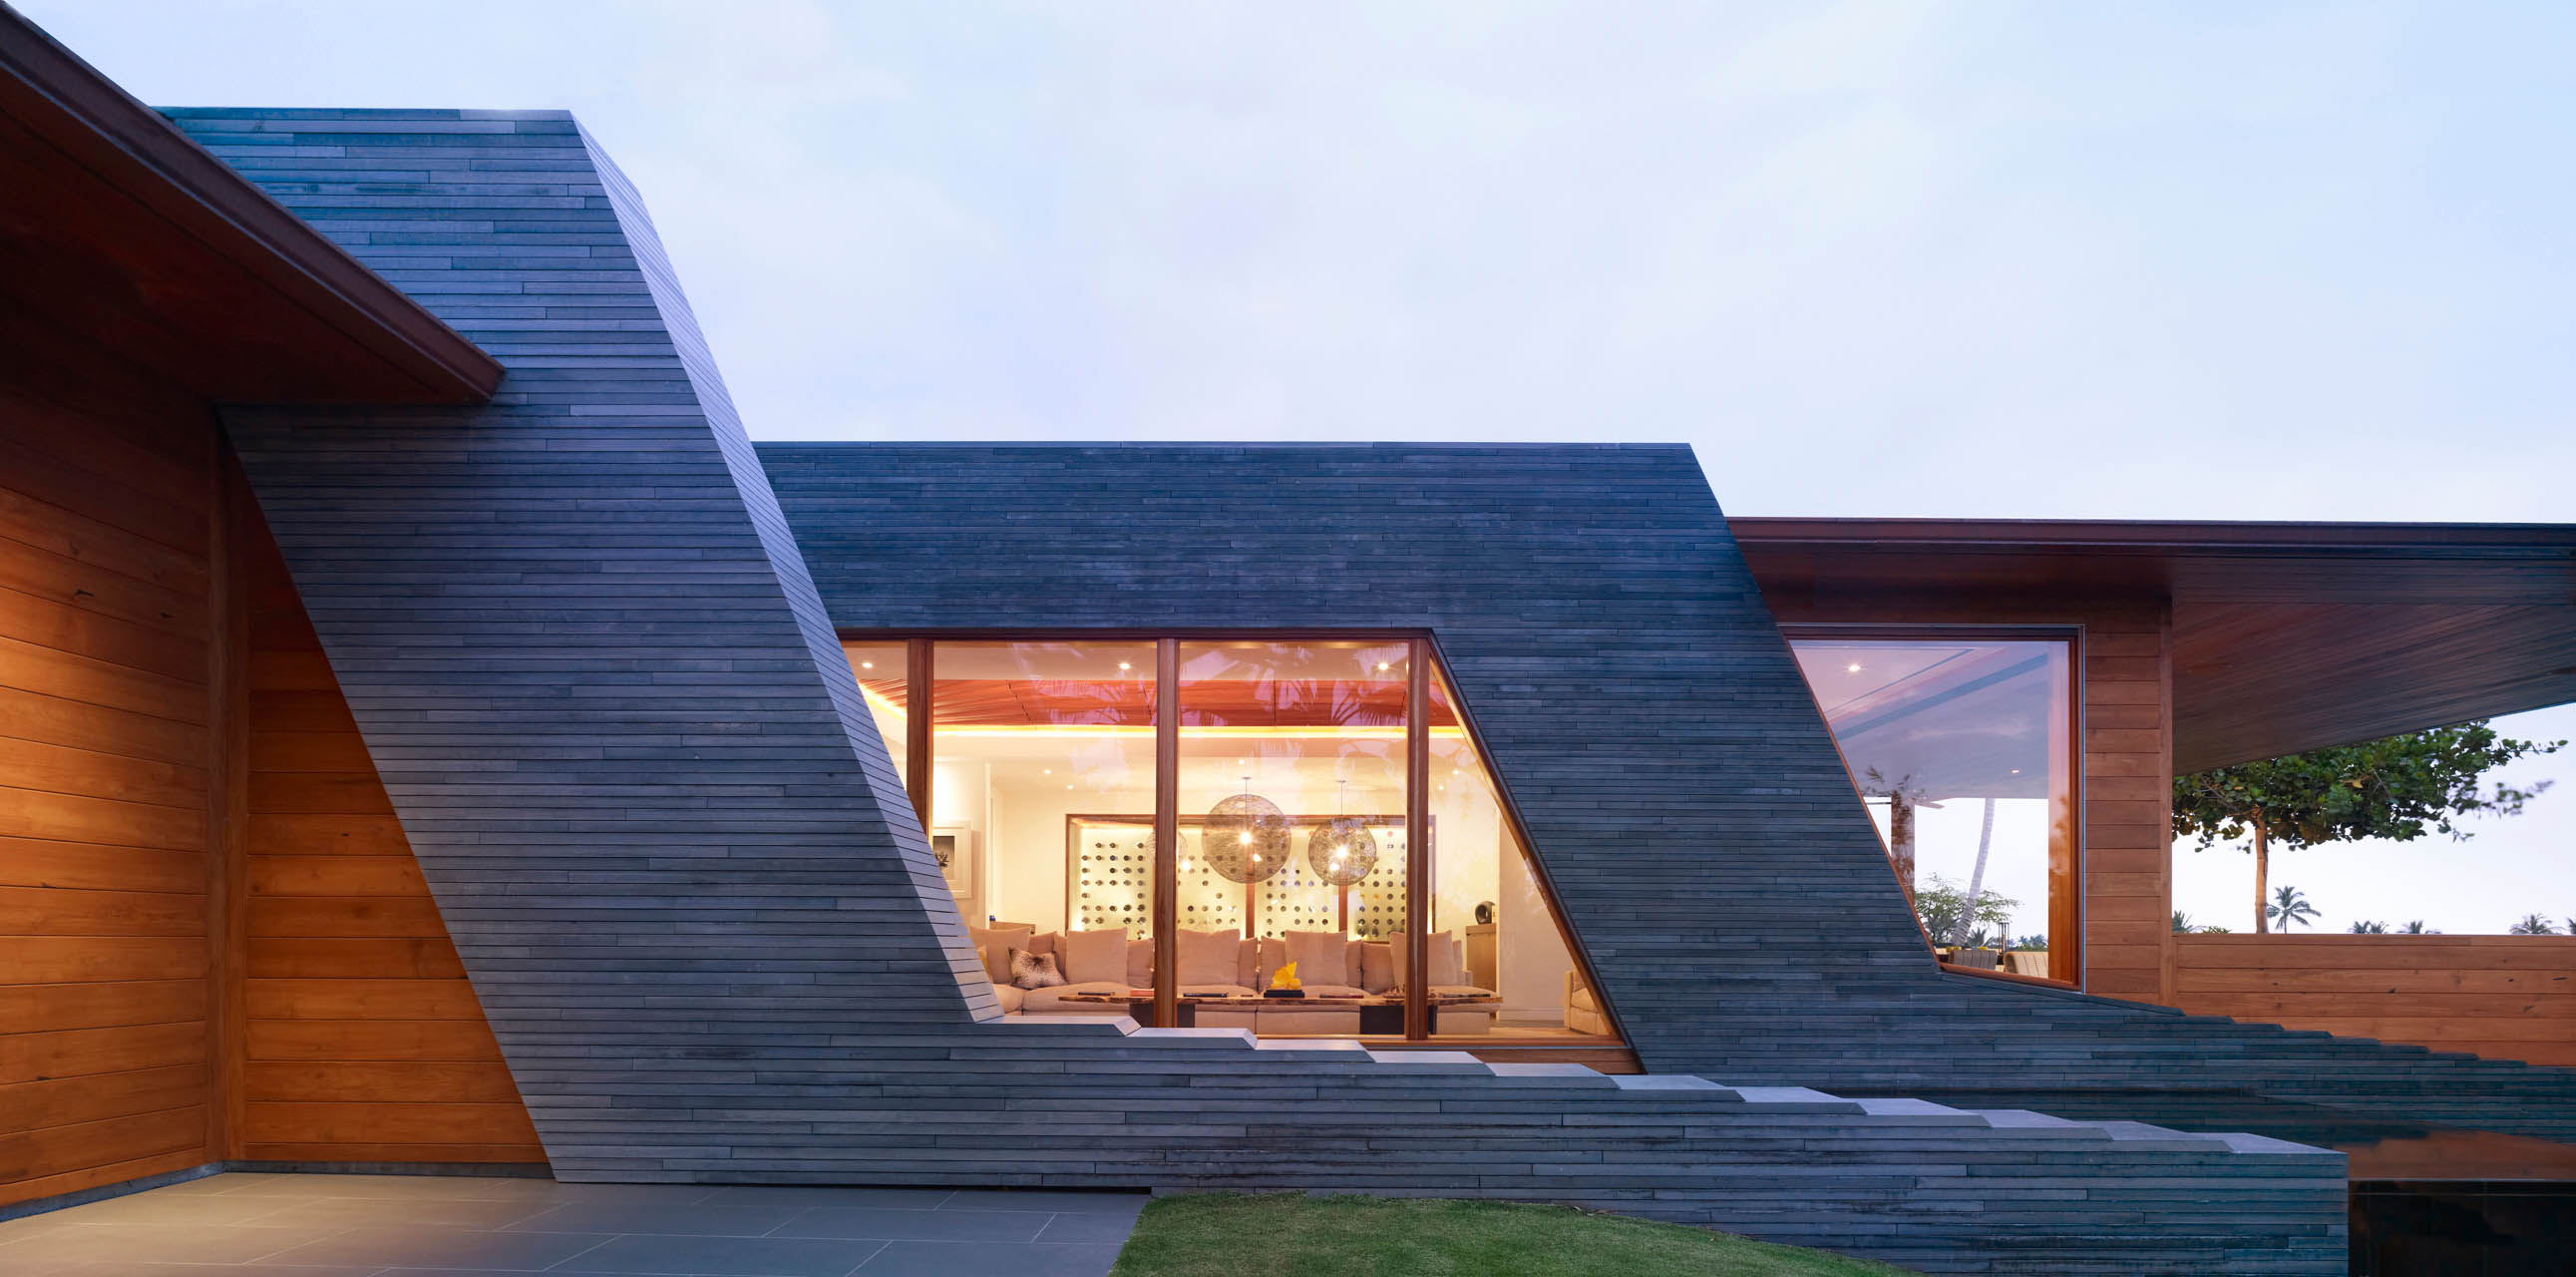 Kona Residence / Belzberg Architects | ideasgn